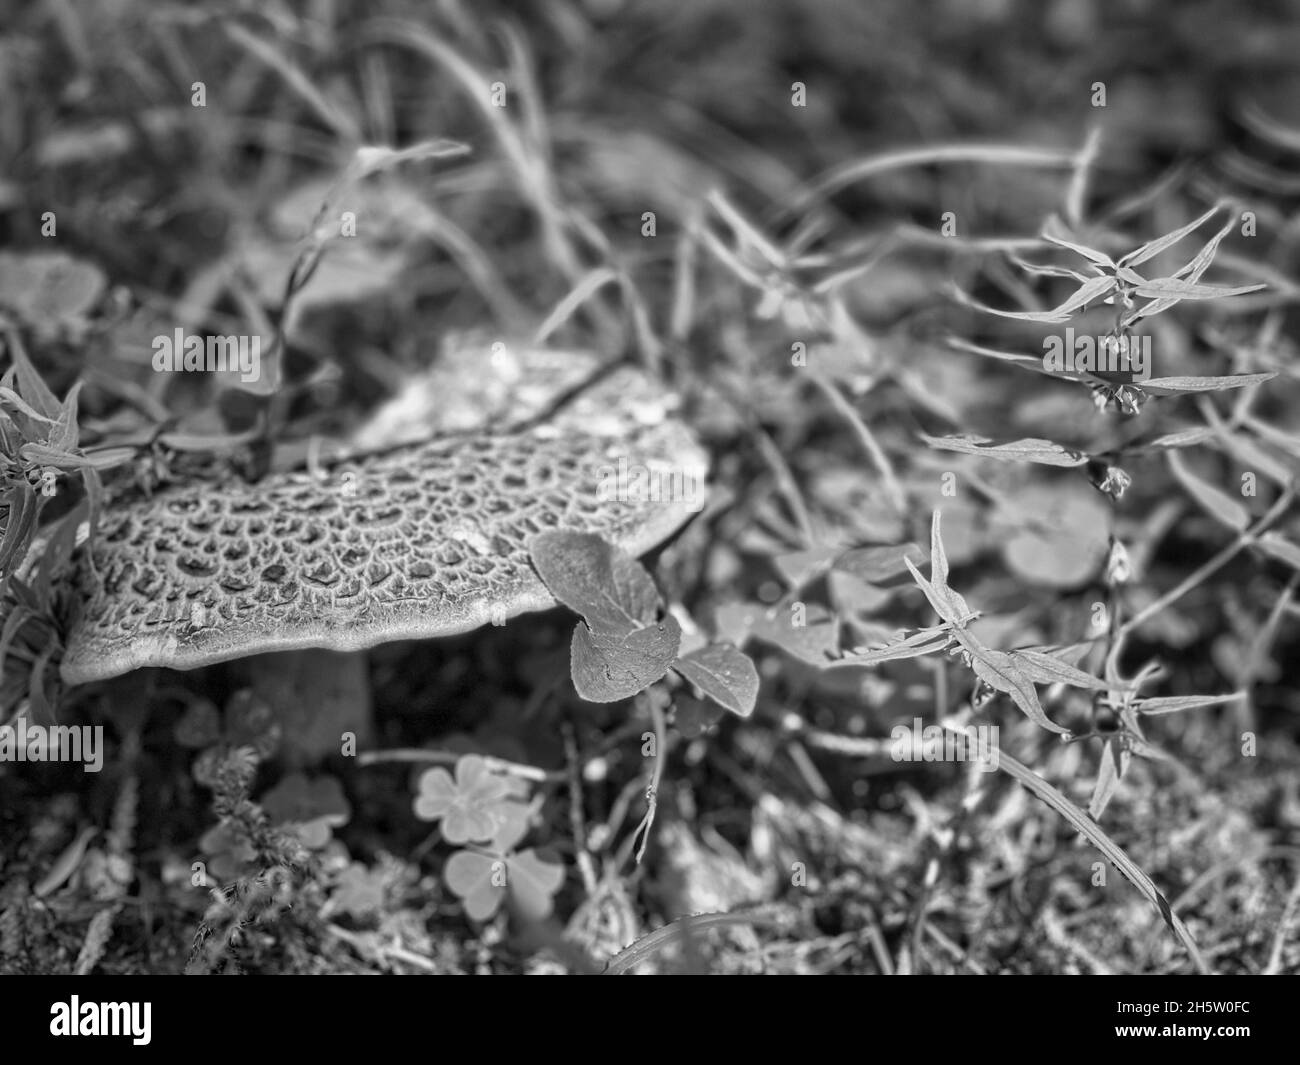 Scatto in scala di grigi di crescente fungo di tinder scaly Foto Stock